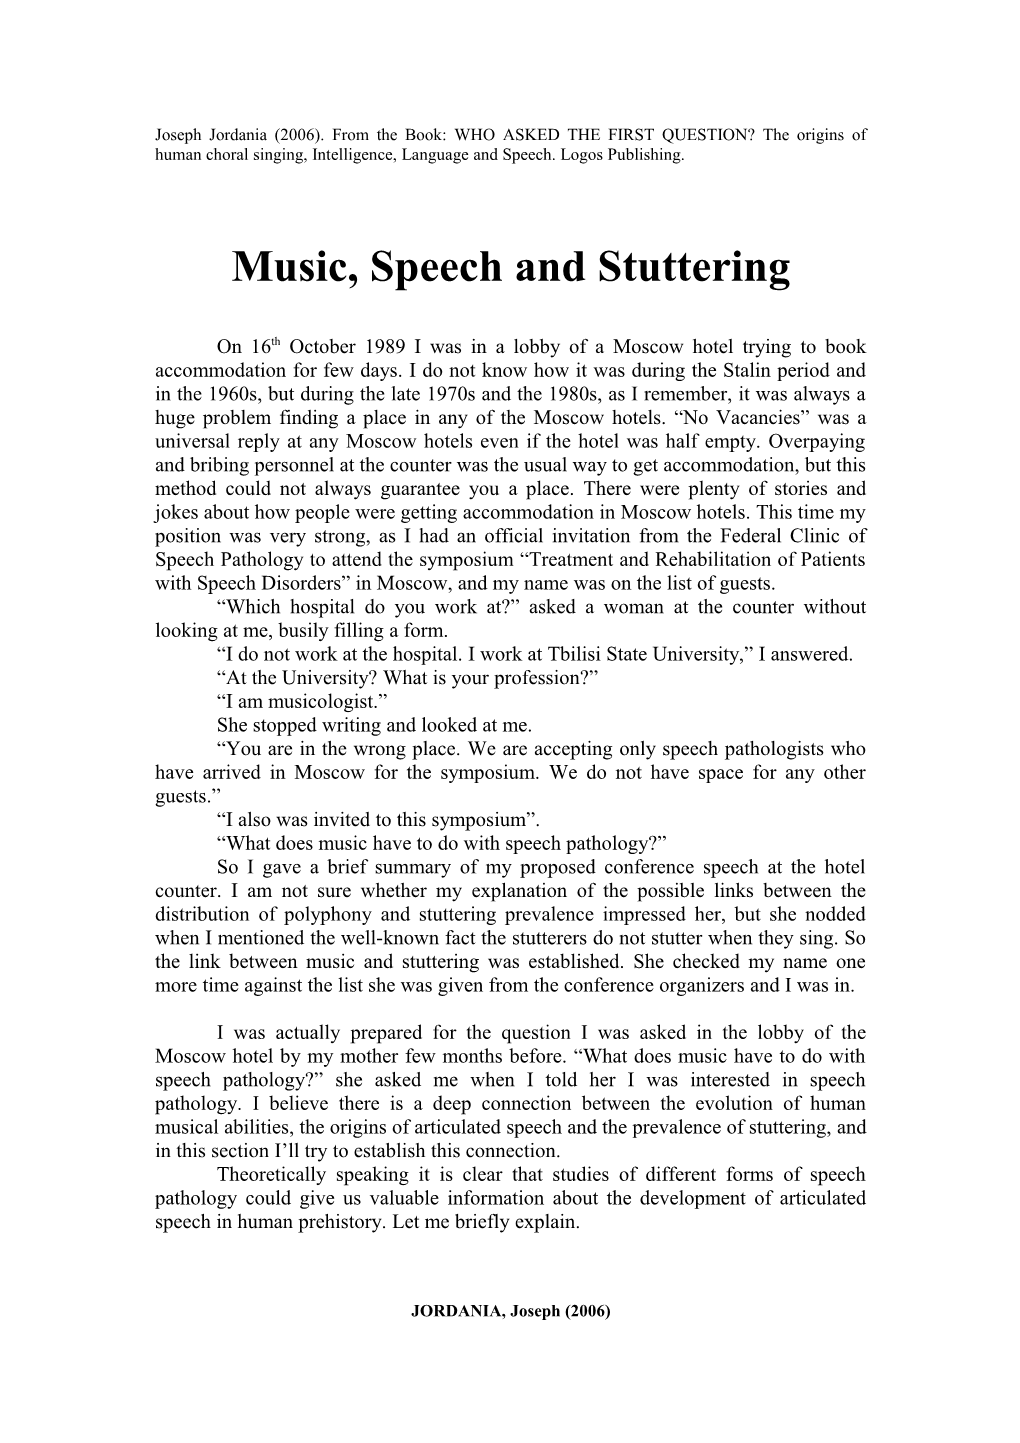 Music, Speech and Stuttering